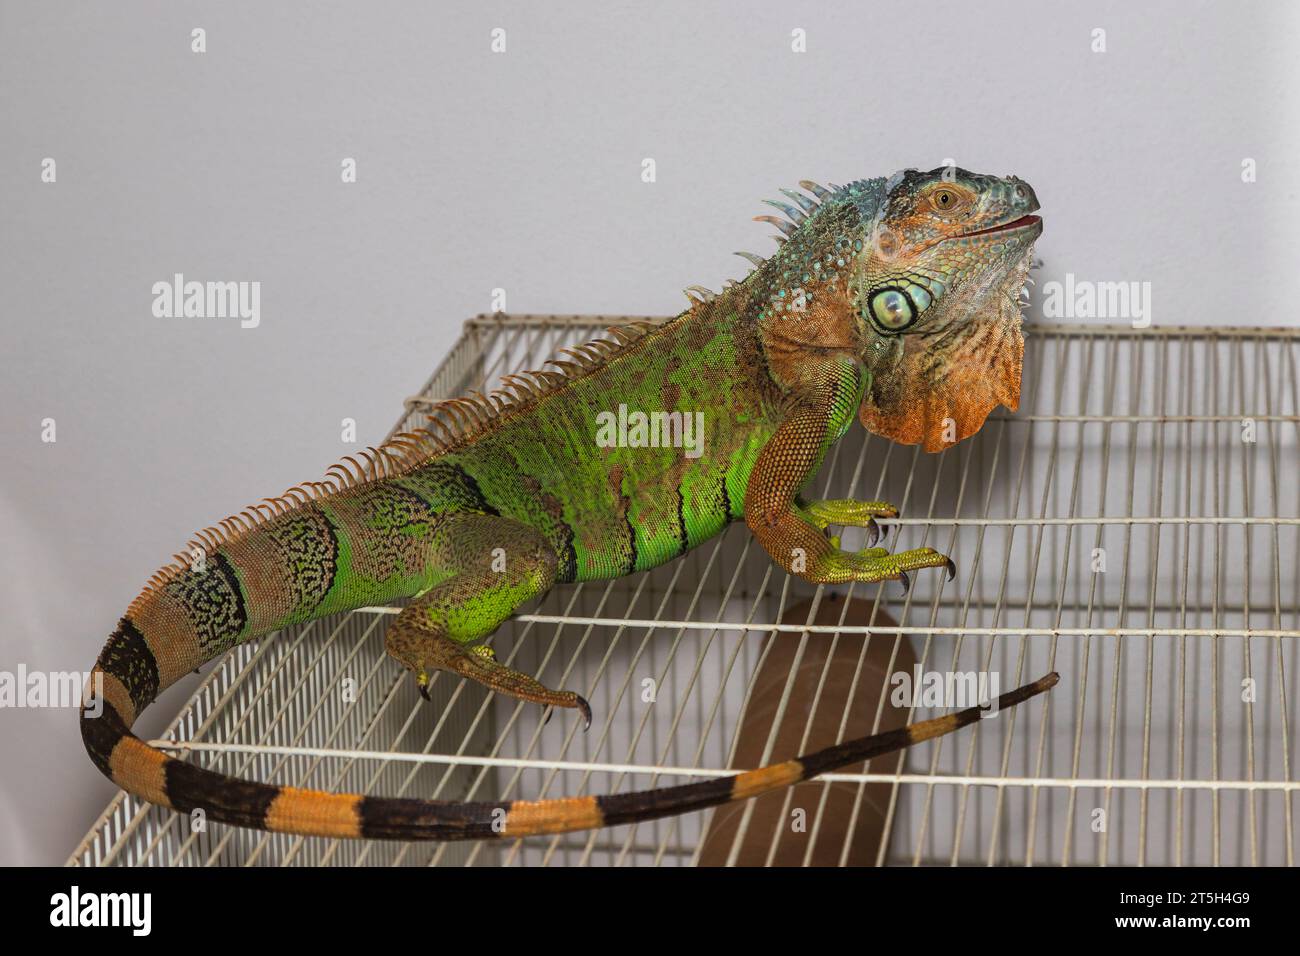 Grüner Leguan - Iguana Leguana - in einer häuslichen Umgebung auf einem Käfig. Das Foto hat einen weißen Hintergrund. Stockfoto